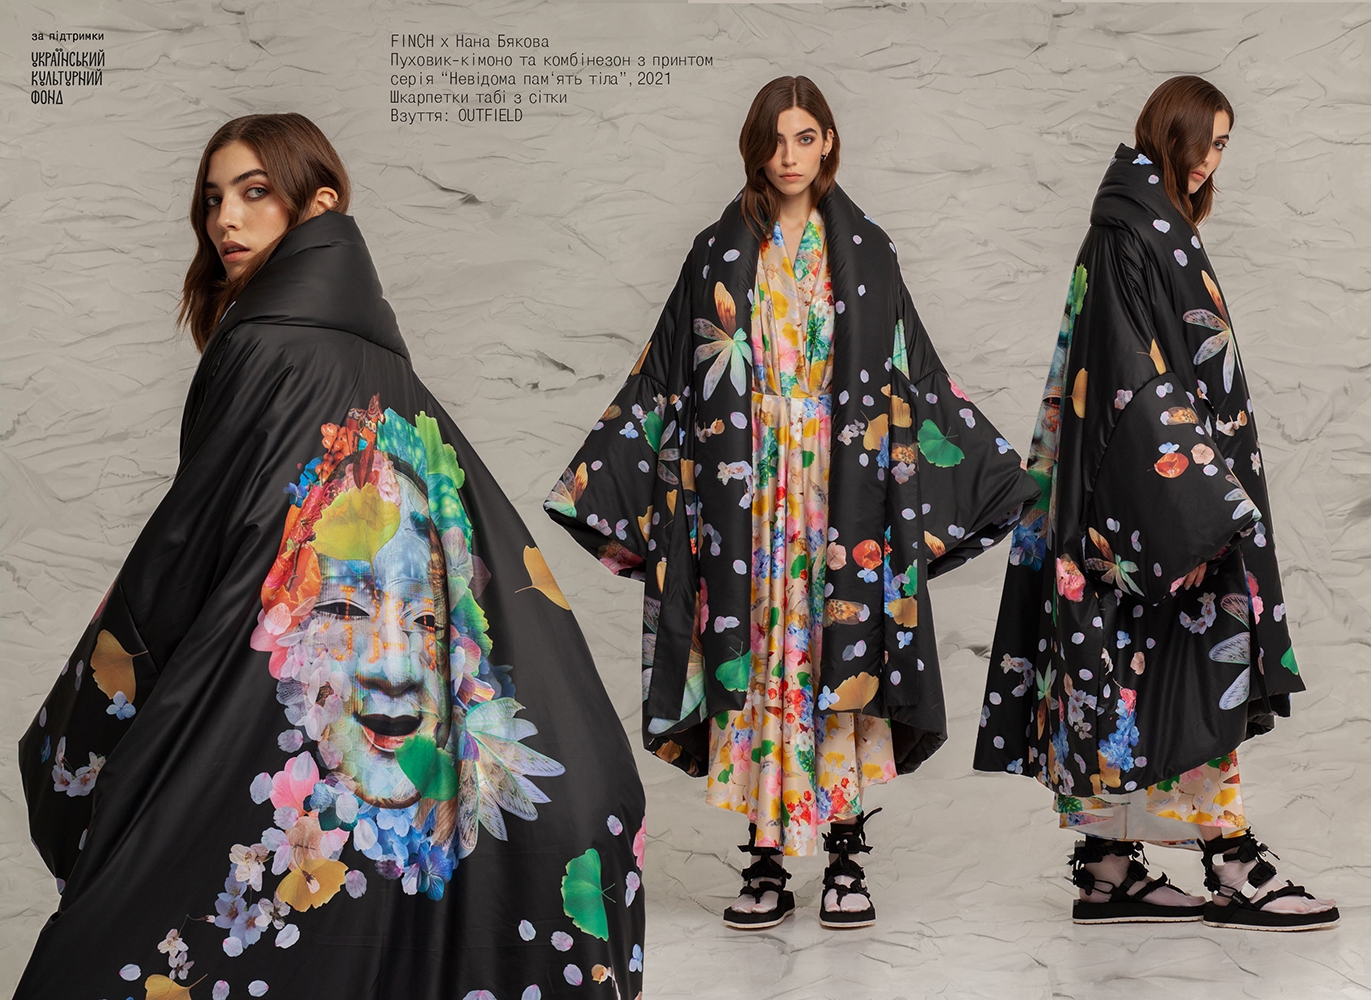 Український бренд одягу FINCH представляє лукбук першого в світі імерсивного модного шоу - фото №1